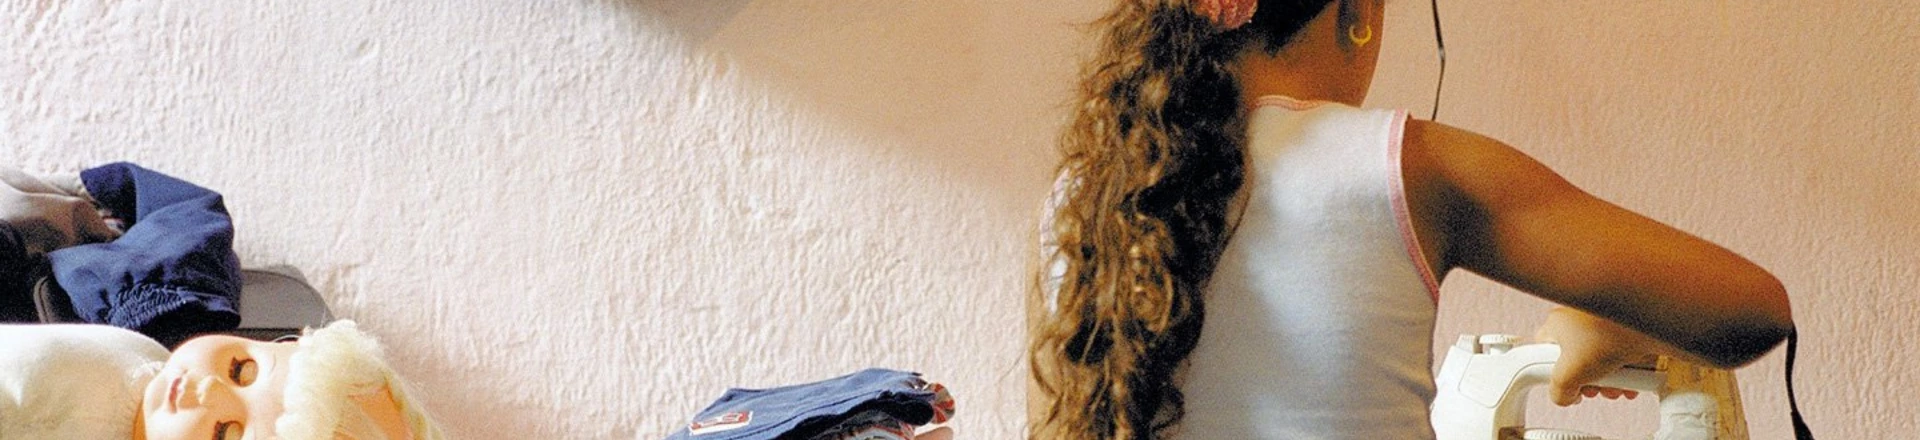 Trabalho infantil: a menina Michelle, 8, passa roupa na casa da avó em favela da zona sul de São Paulo. (São Paulo, SP, 09.04.2003. Foto: Tuca Vieira/Folhapress